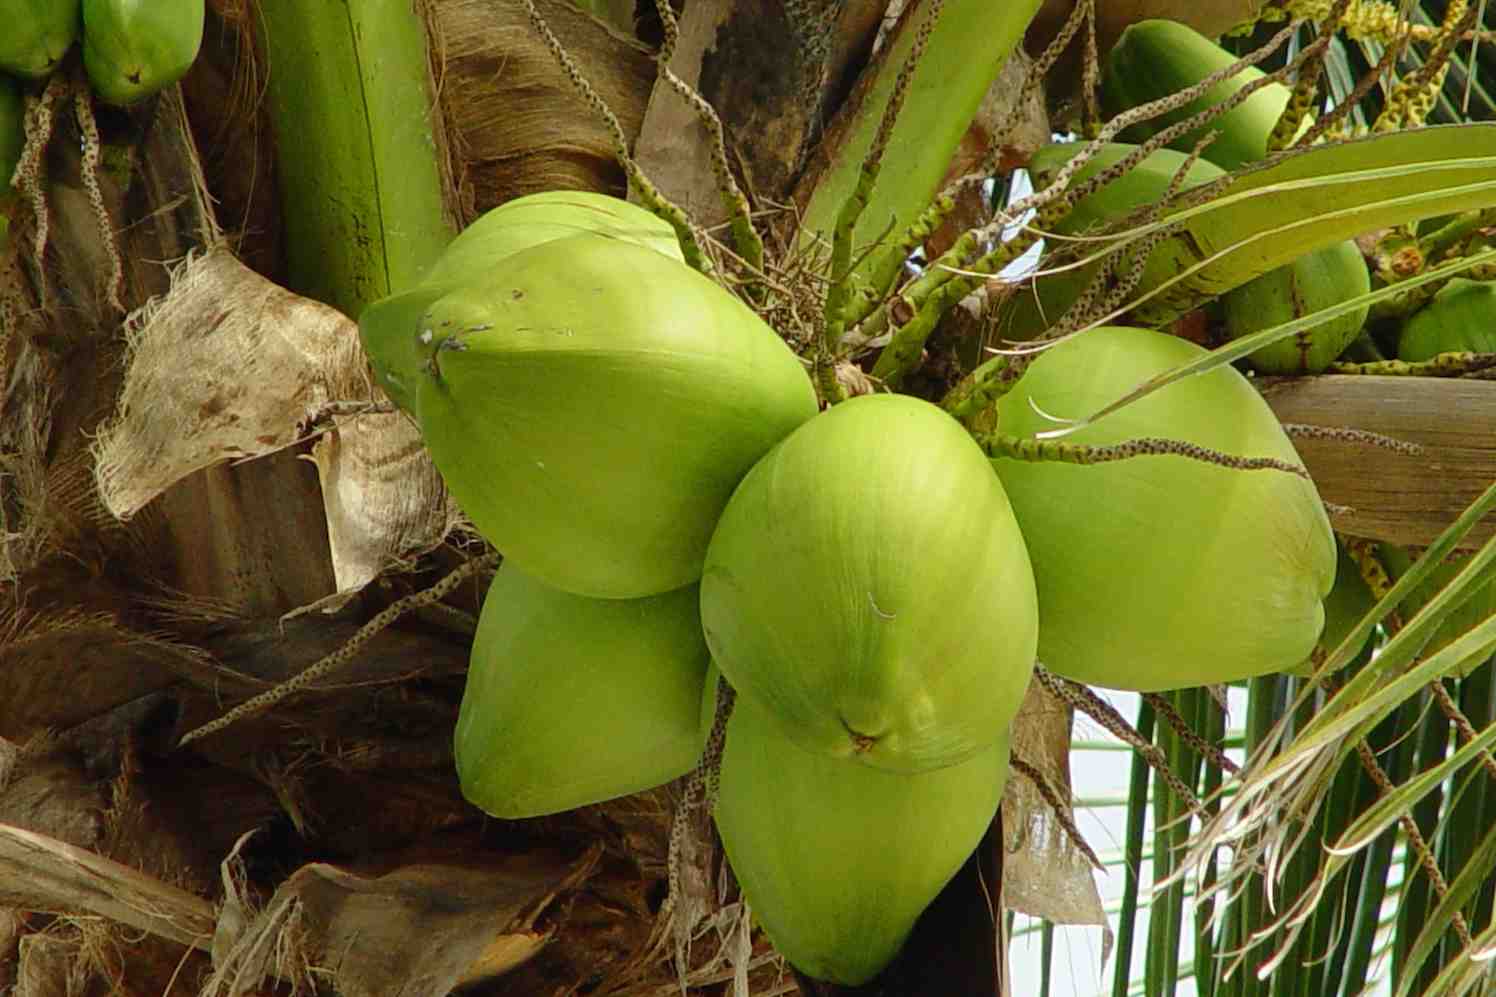 kokospalm met kokosnoten